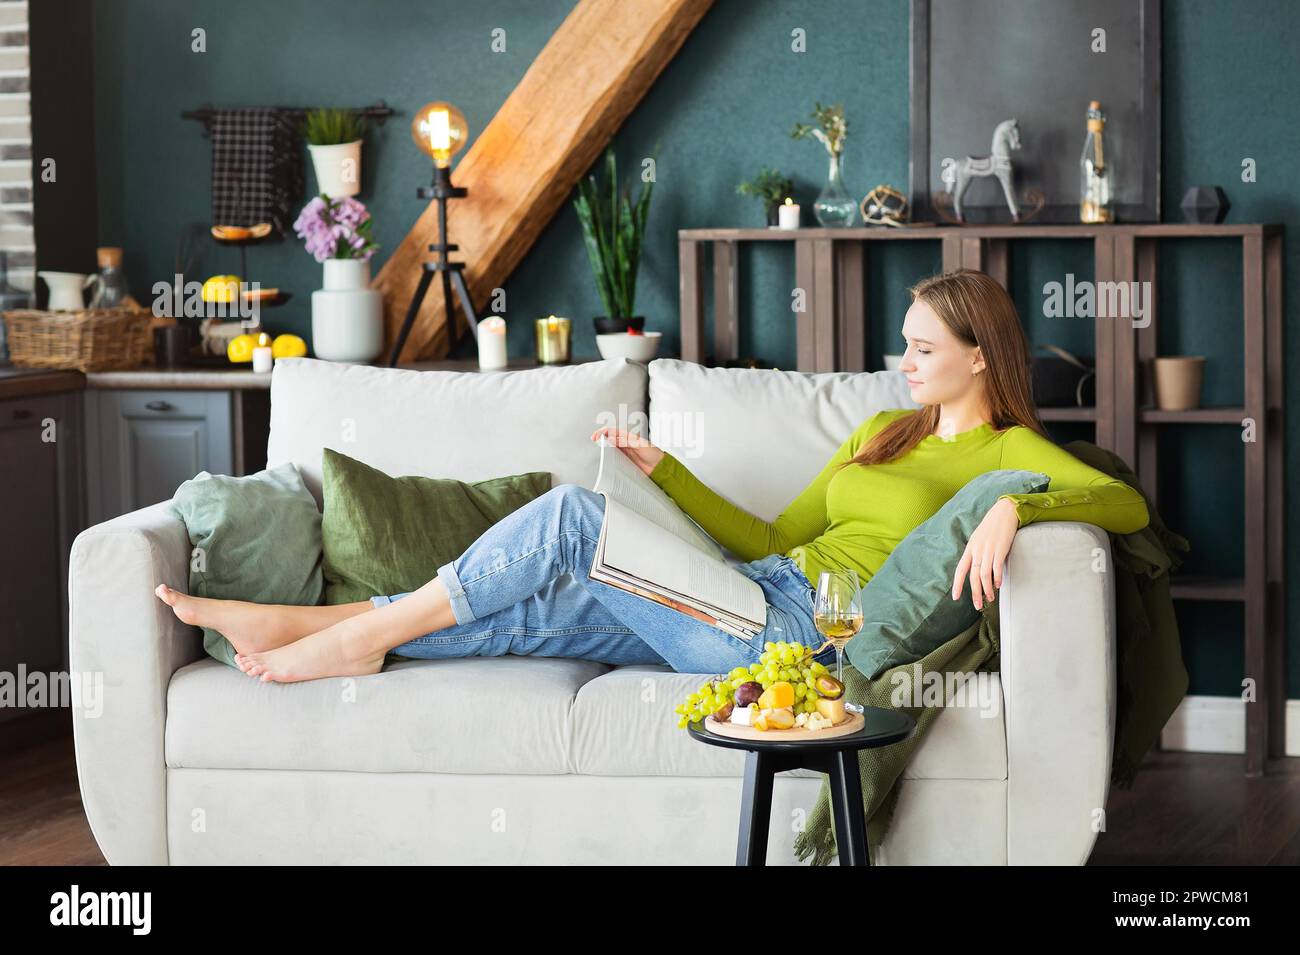 Seitenansicht einer jungen Frau beim Lesen eines interessanten Magazins im Liegen Auf der bequemen Couch neben dem Tisch mit Obst und Wein Wochenendtag zu Hause Stockfoto